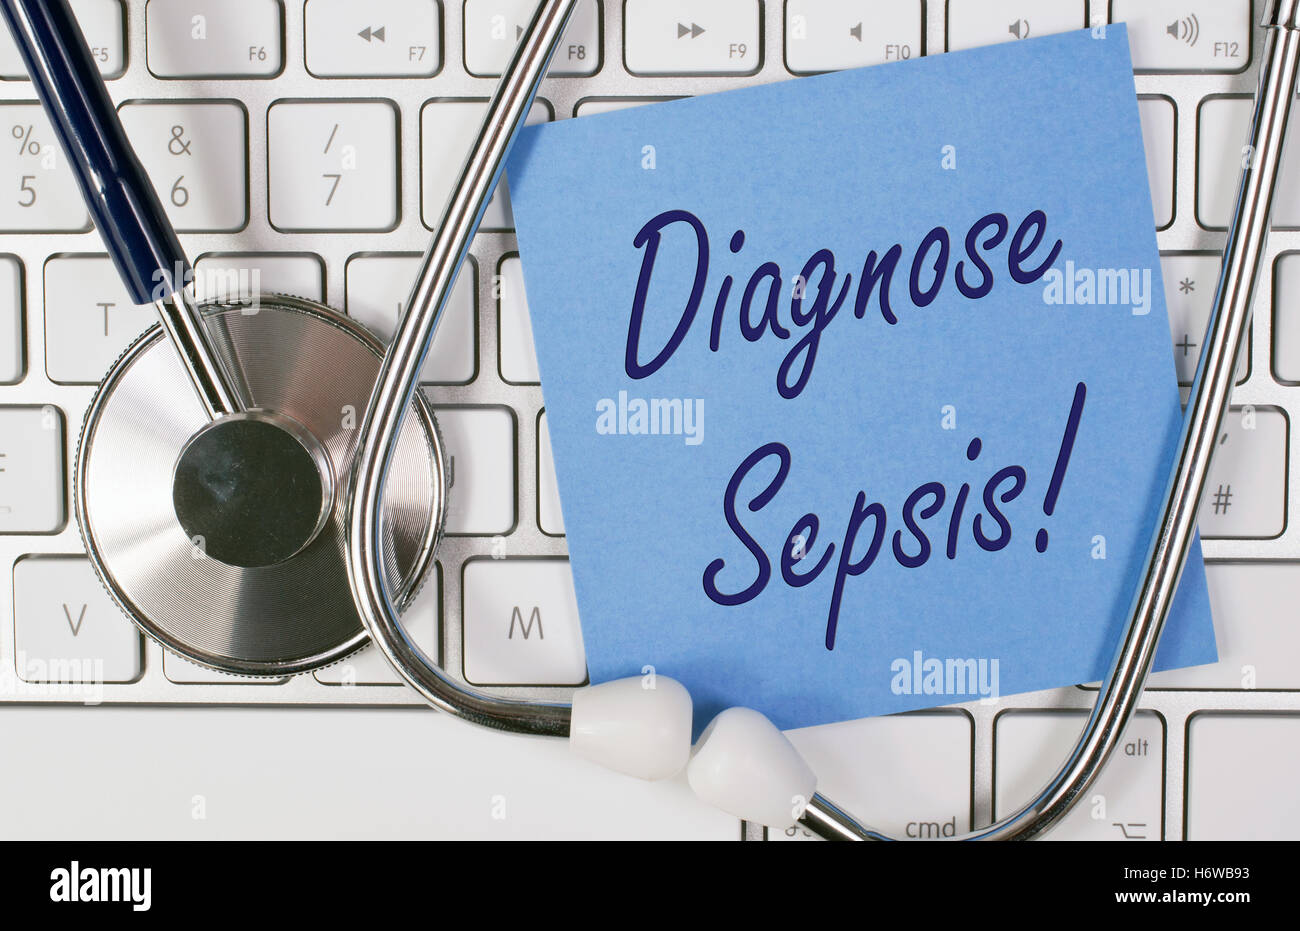 diagnosis sepsis Stock Photo